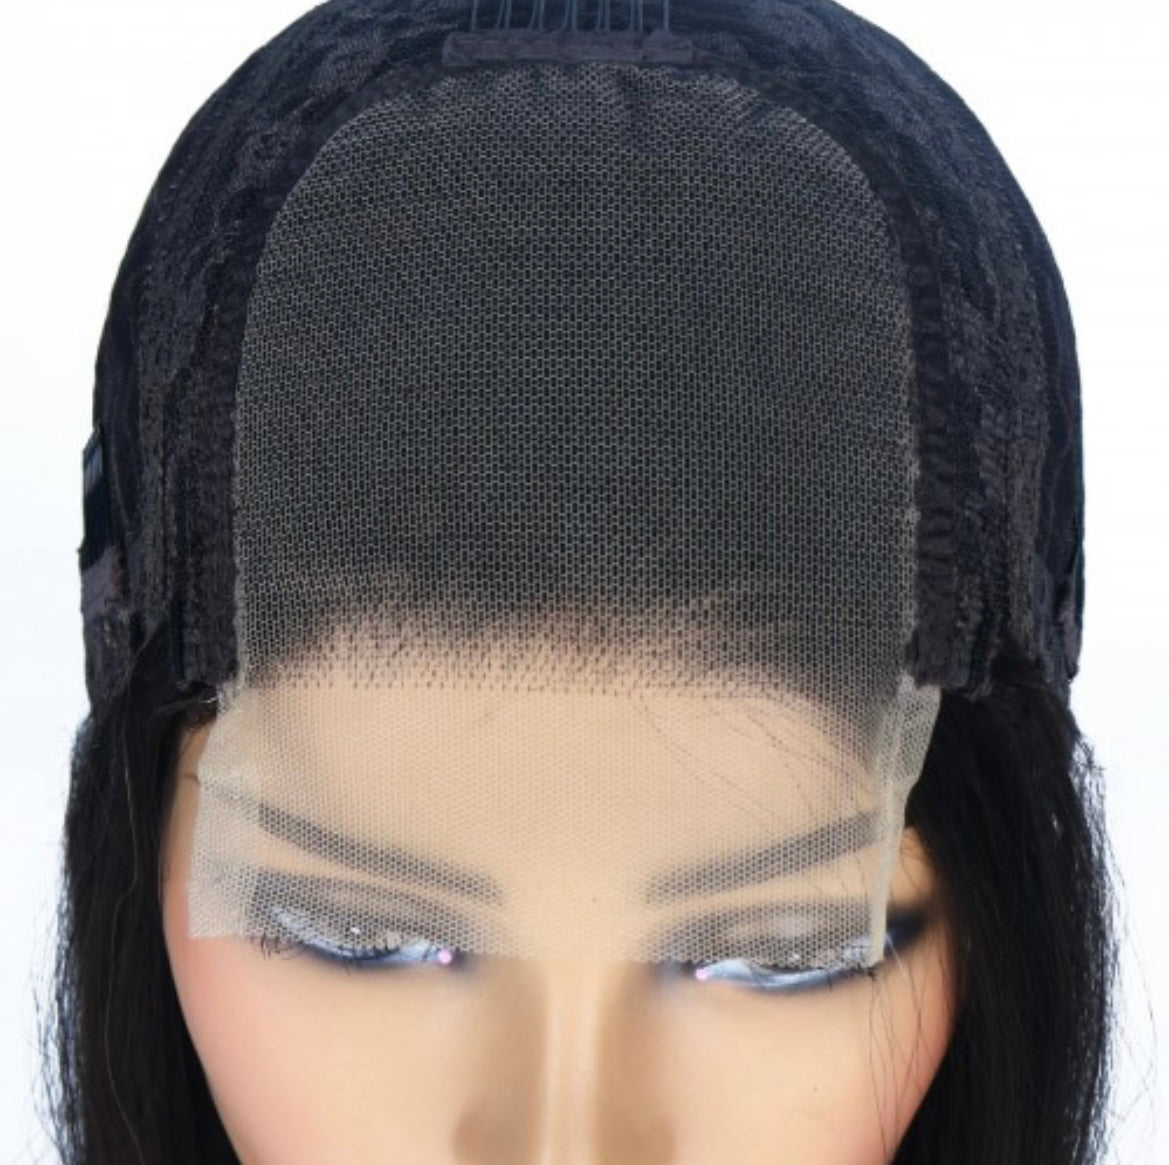 Lace Closure Wig (pre-made)